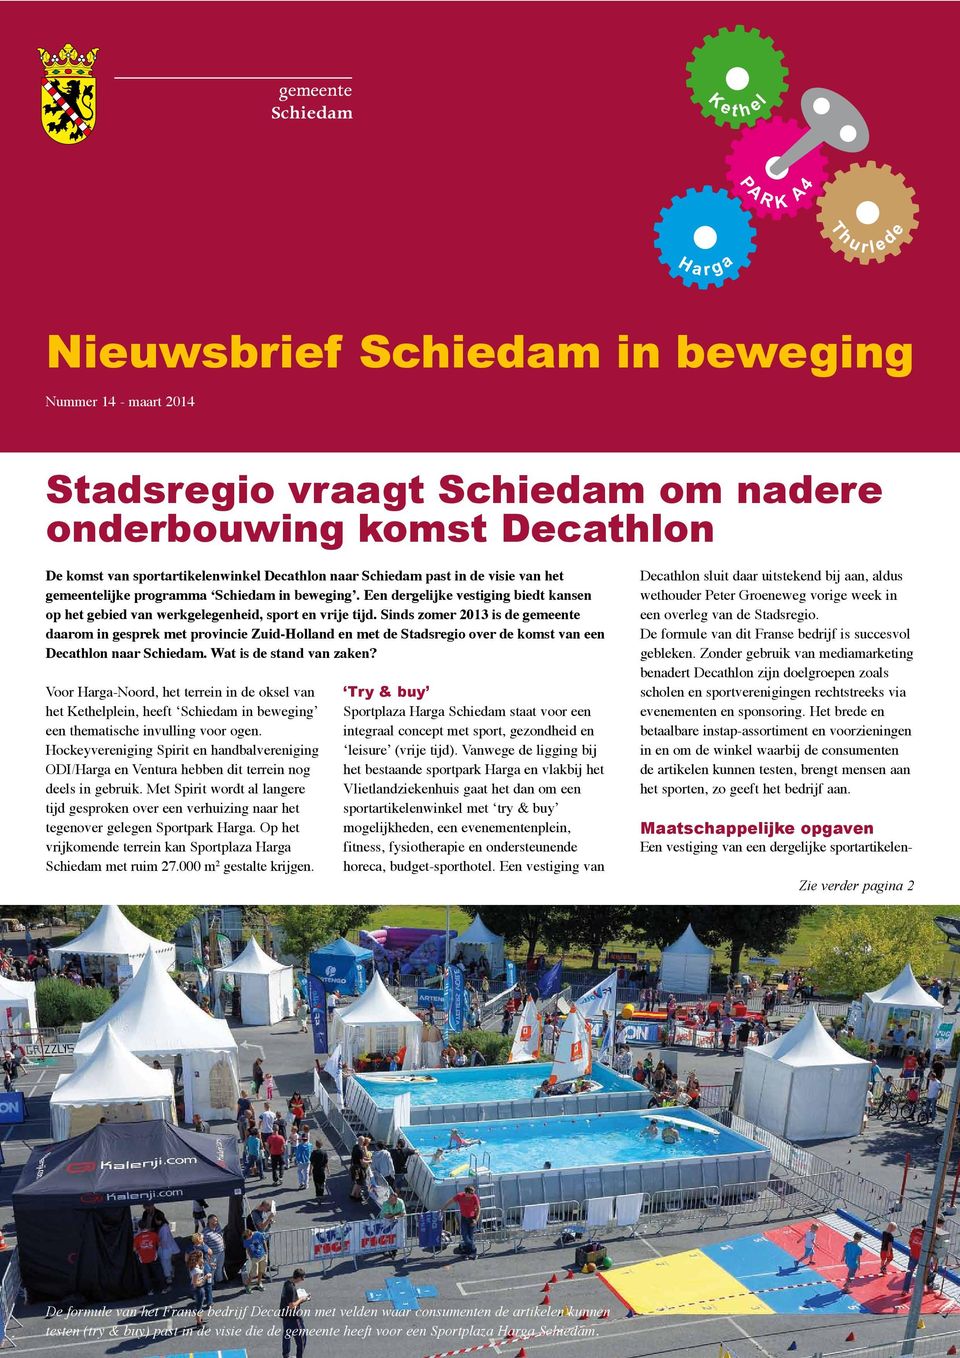 Sinds zomer 2013 is de gemeente daarom in gesprek met provincie Zuid-Holland en met de Stadsregio over de komst van een Decathlon naar Schiedam. Wat is de stand van zaken?